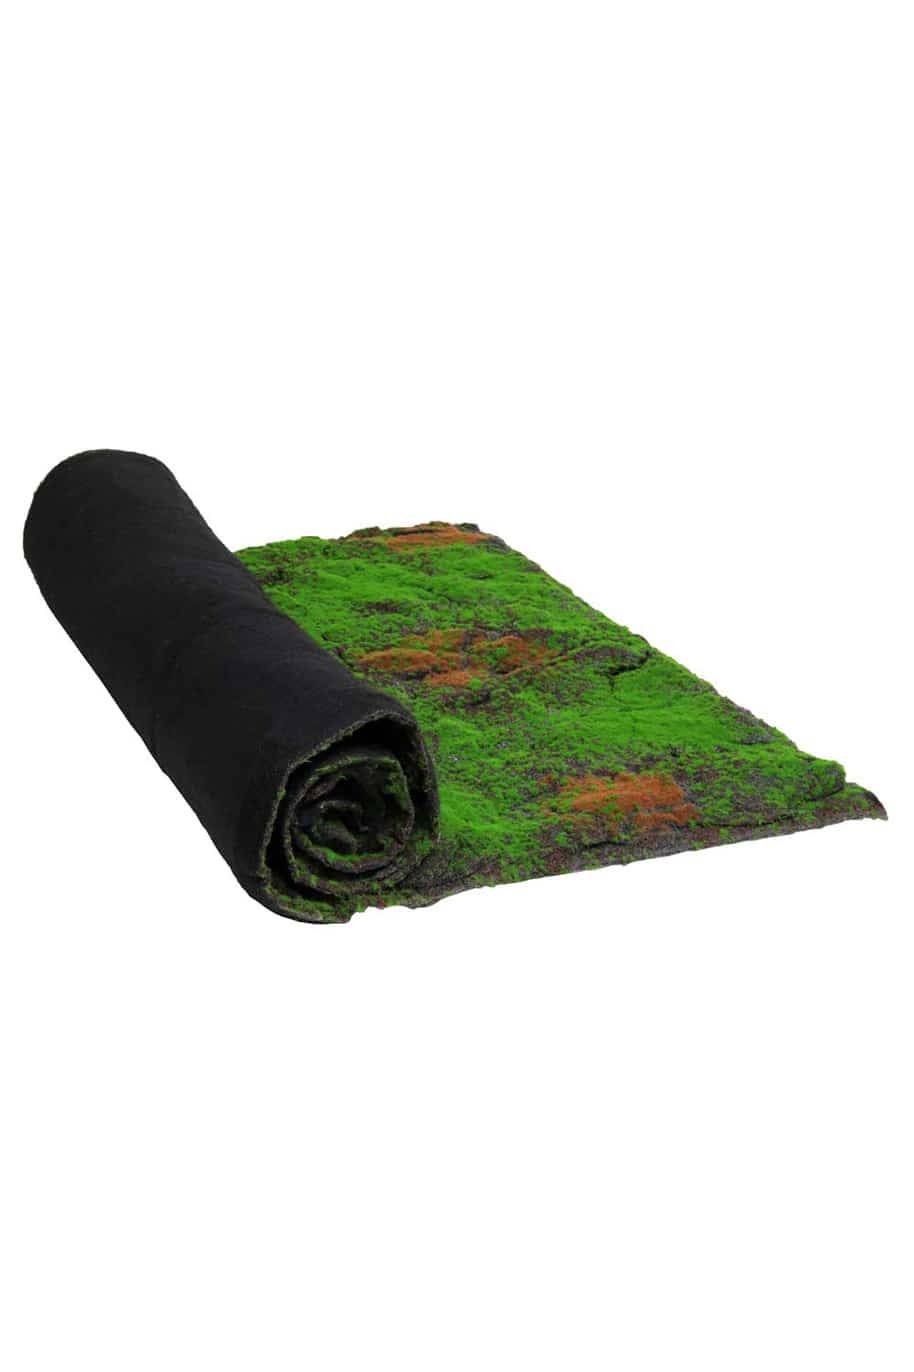 Artificial Moss Lawn Mat